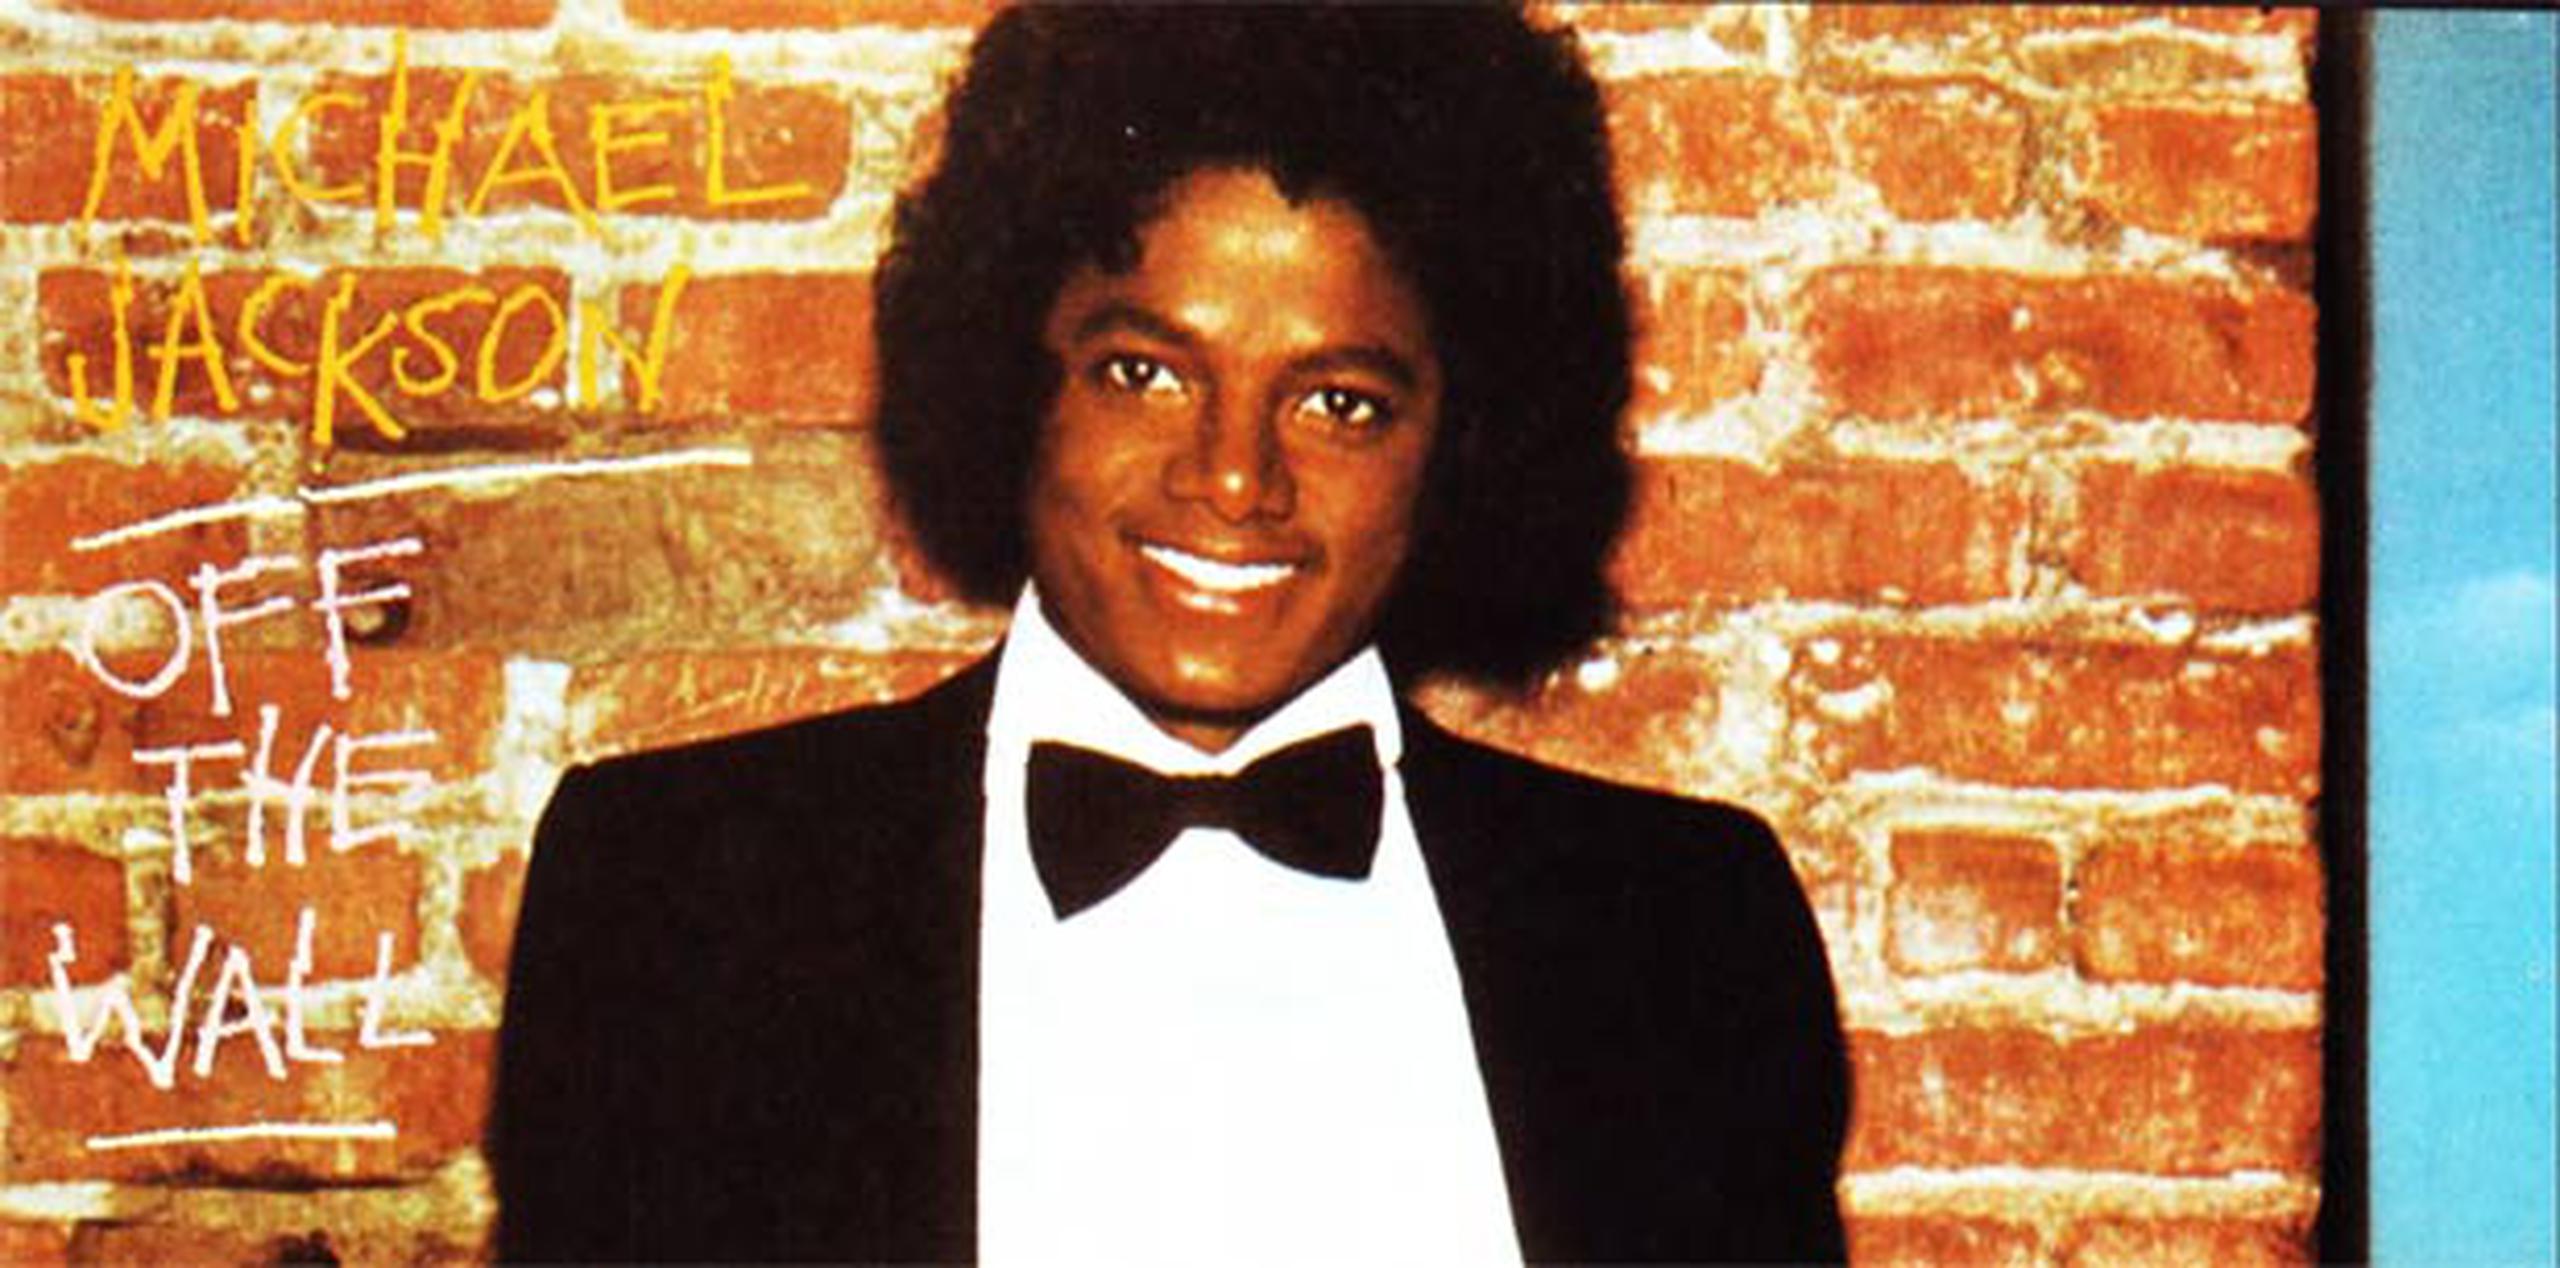 Los herederos de Jackson y la editora Sony Music lanzarán el disco de 36 años con un DVD del filme "Michael Jackson's Journey from Motown to 'Off the Wall'" el 26 de febrero.